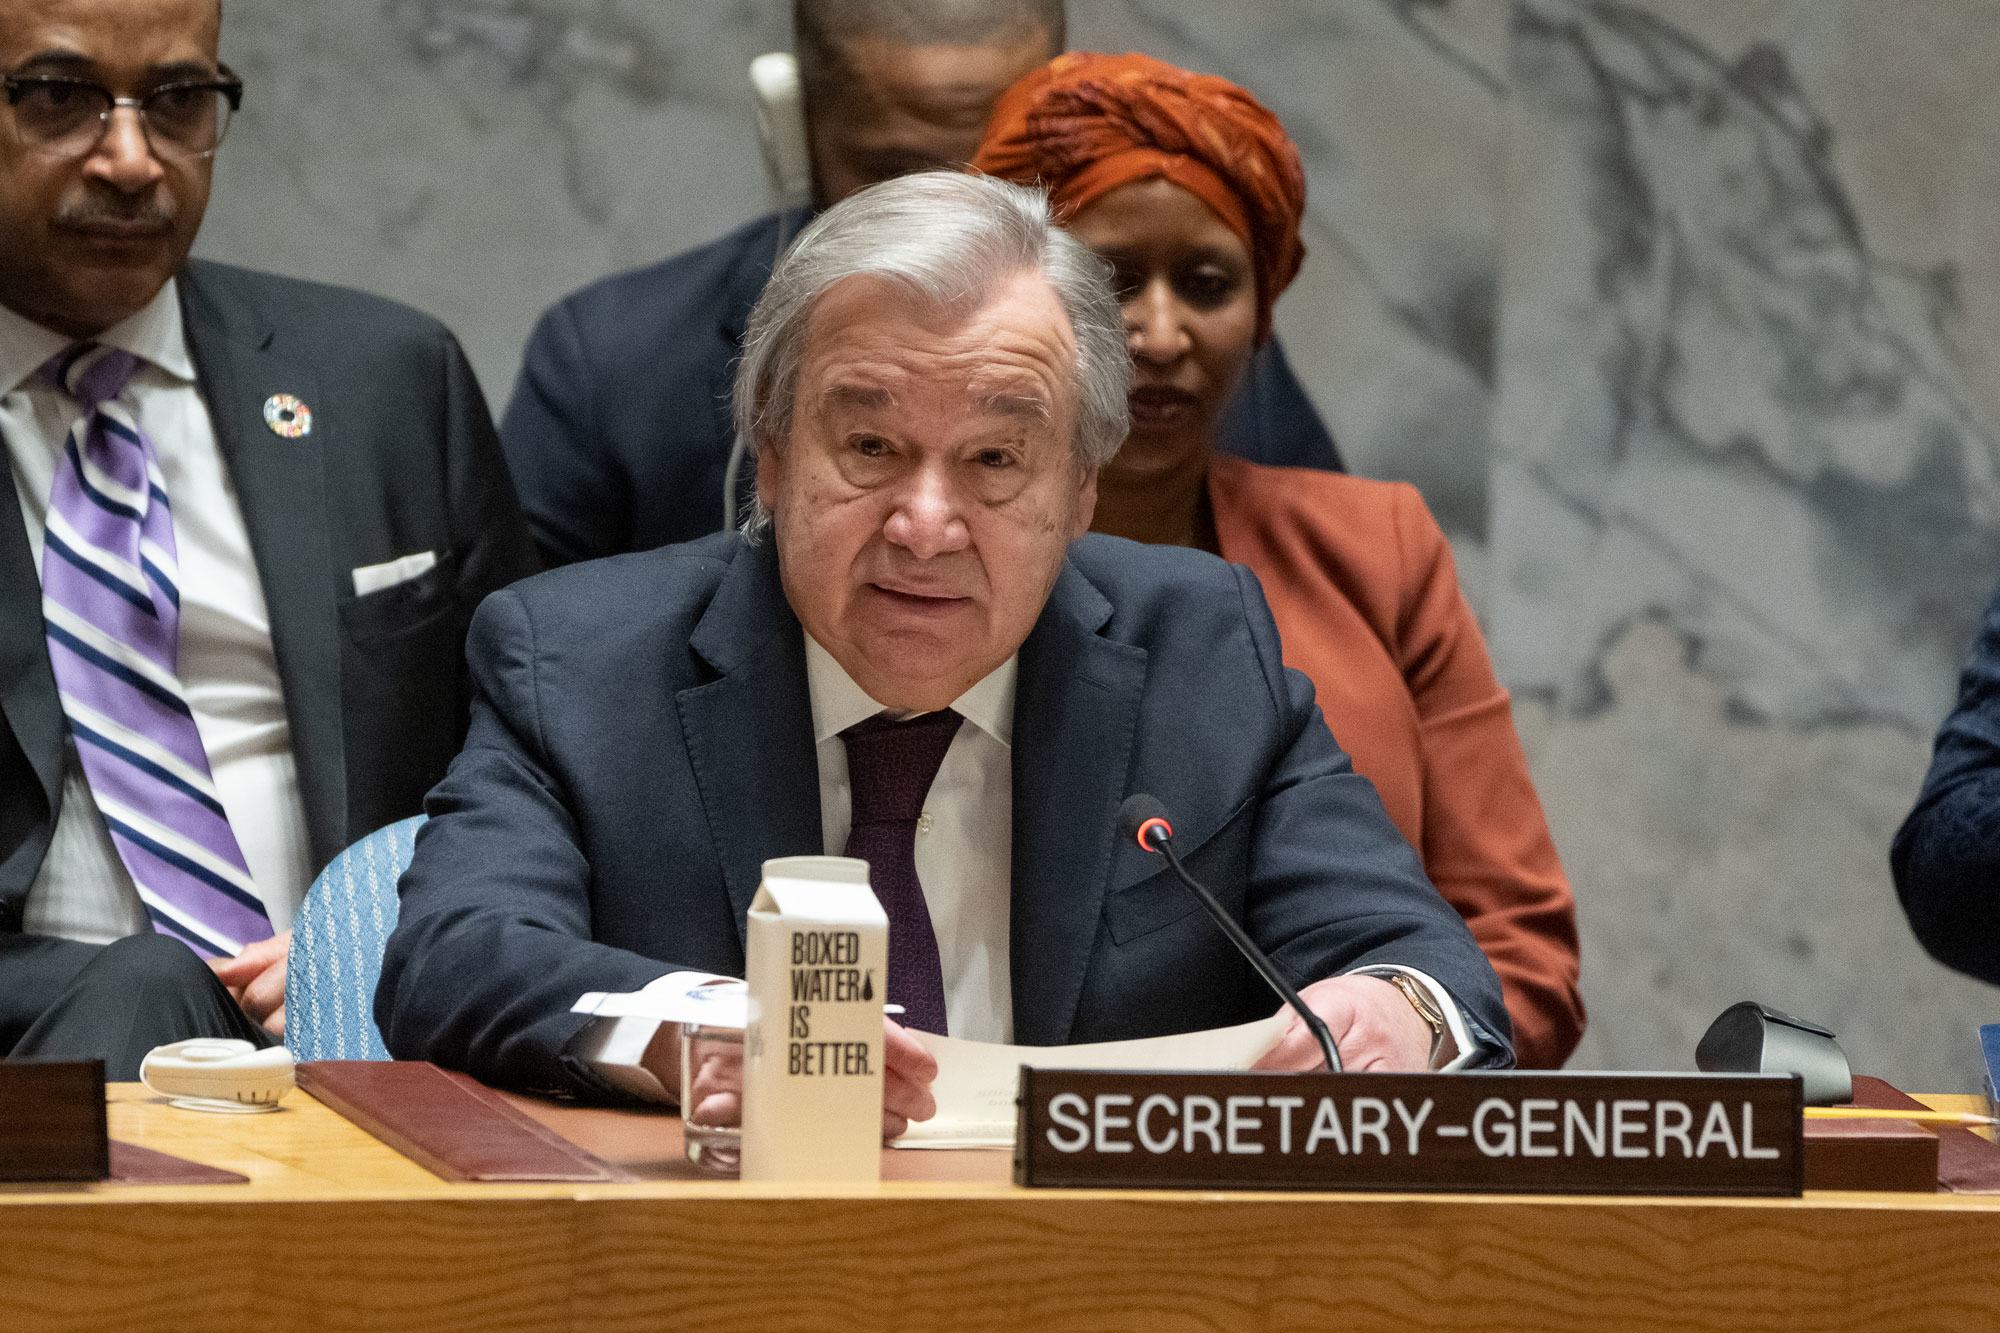 الأمين العام للأمم المتحدة أنطونيو غوتيريش يلقي كلمة أمام اجتماع مجلس الأمن بشأن التهديدات التي يتعرض لها السلام والأمن الدوليان بسبب الأعمال الإرهابية.